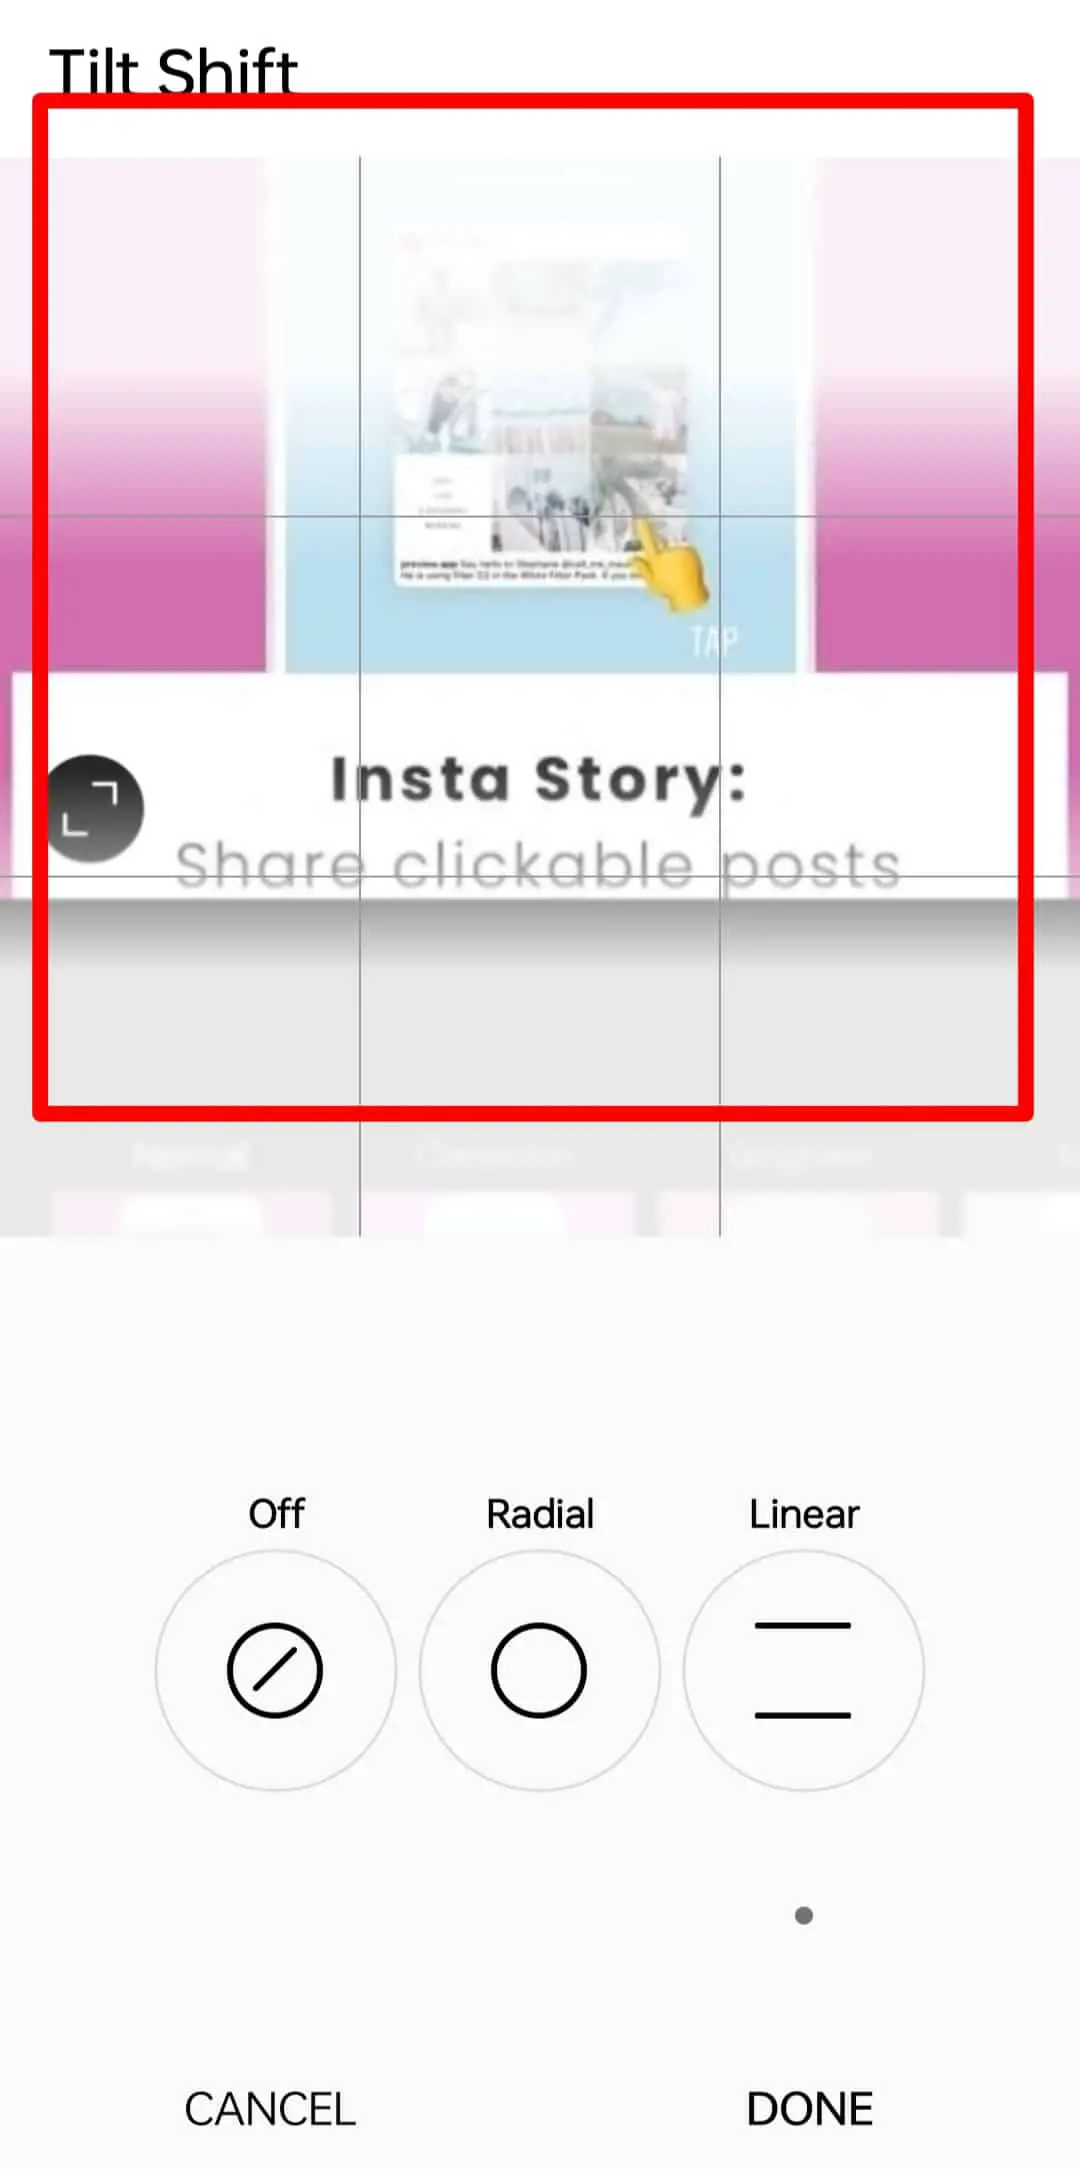 Cómo desenfocar una imagen en Instagram?